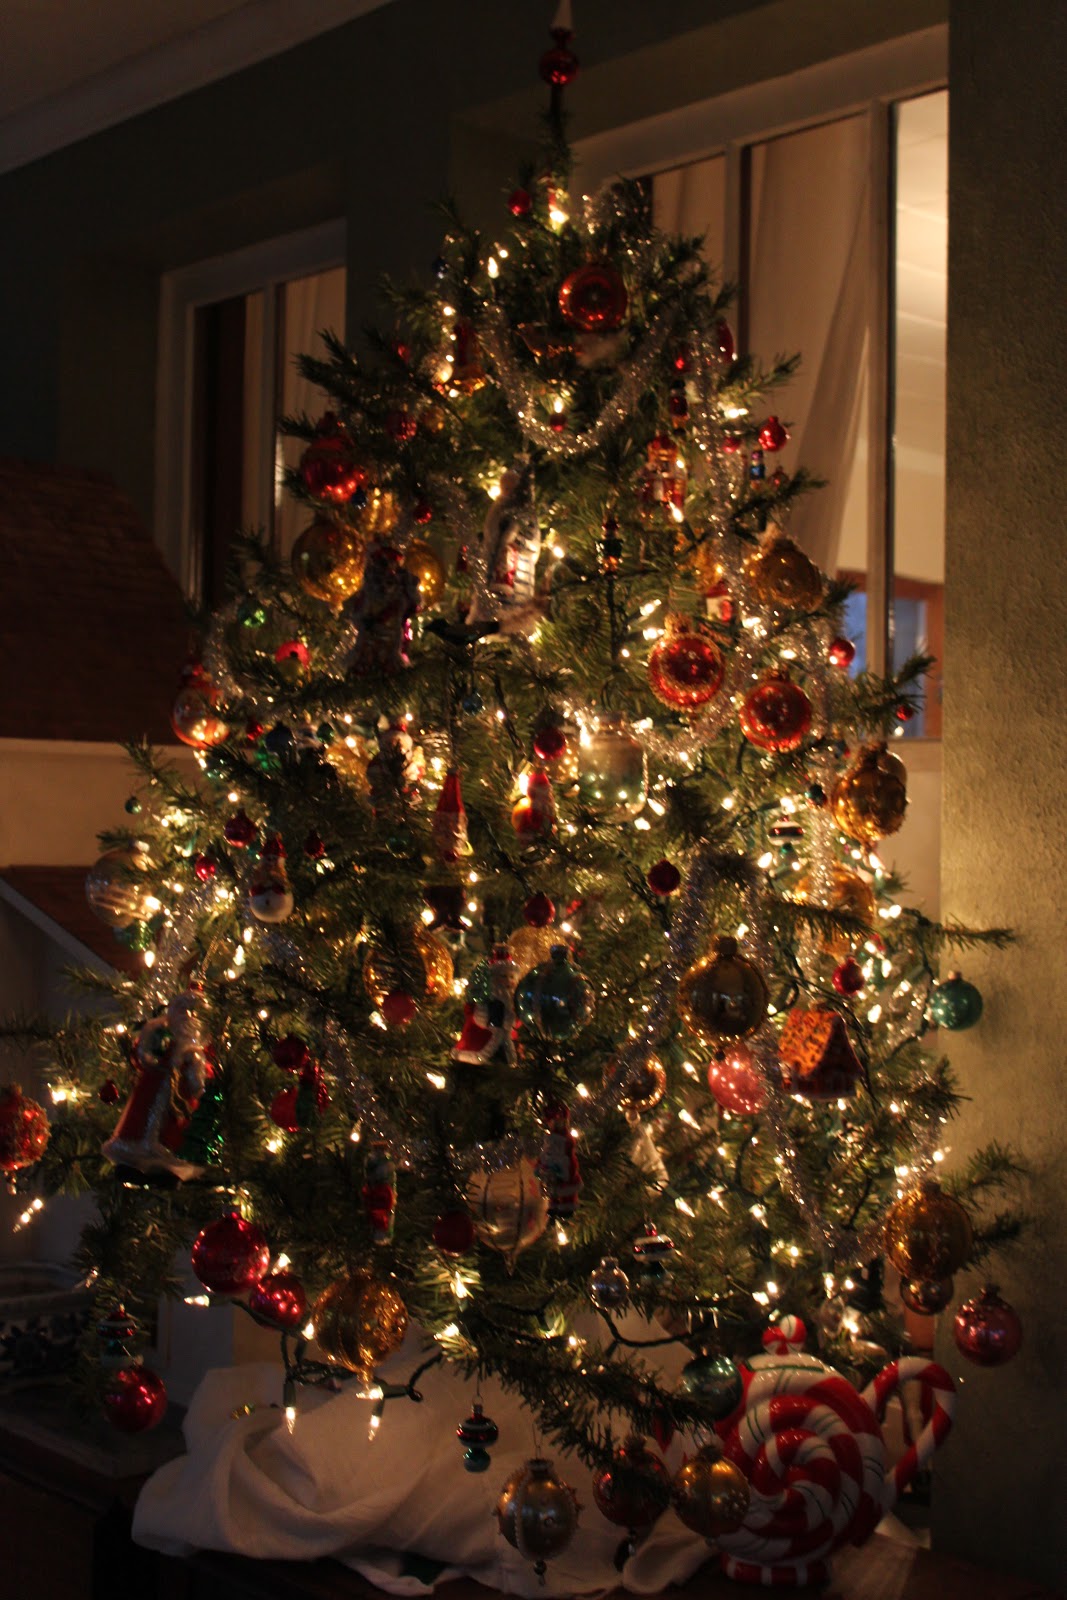 Sugarplum Land: The Radko/Blown Glass Christmas Tree